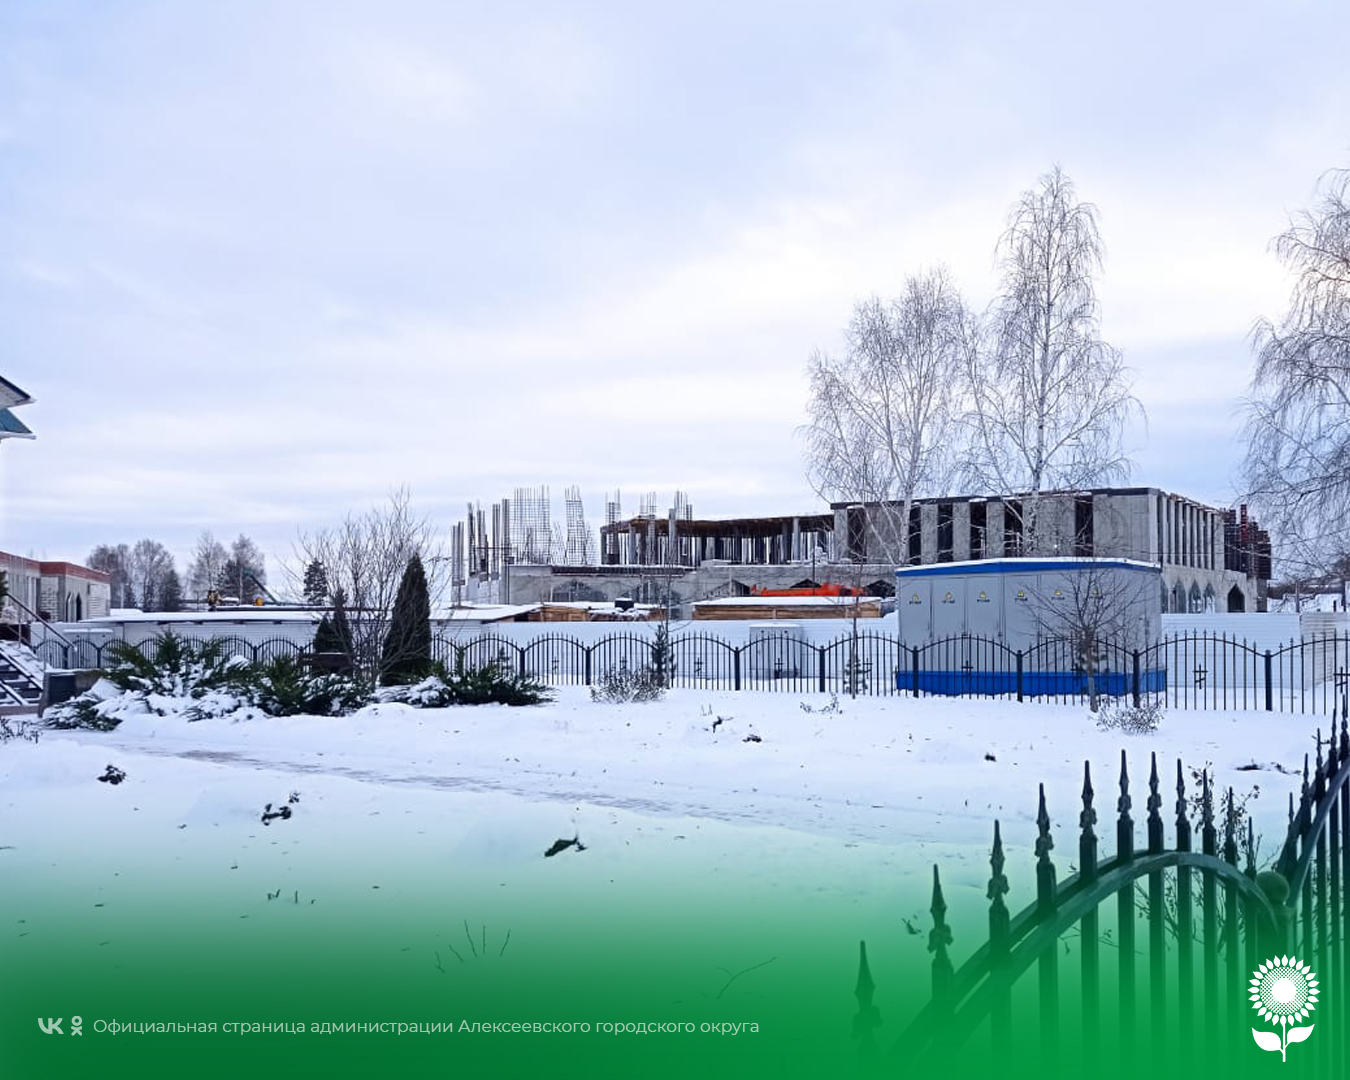 Белгородэнерго обеспечил электроснабжение центра культурного развития в Алексеевском округе.